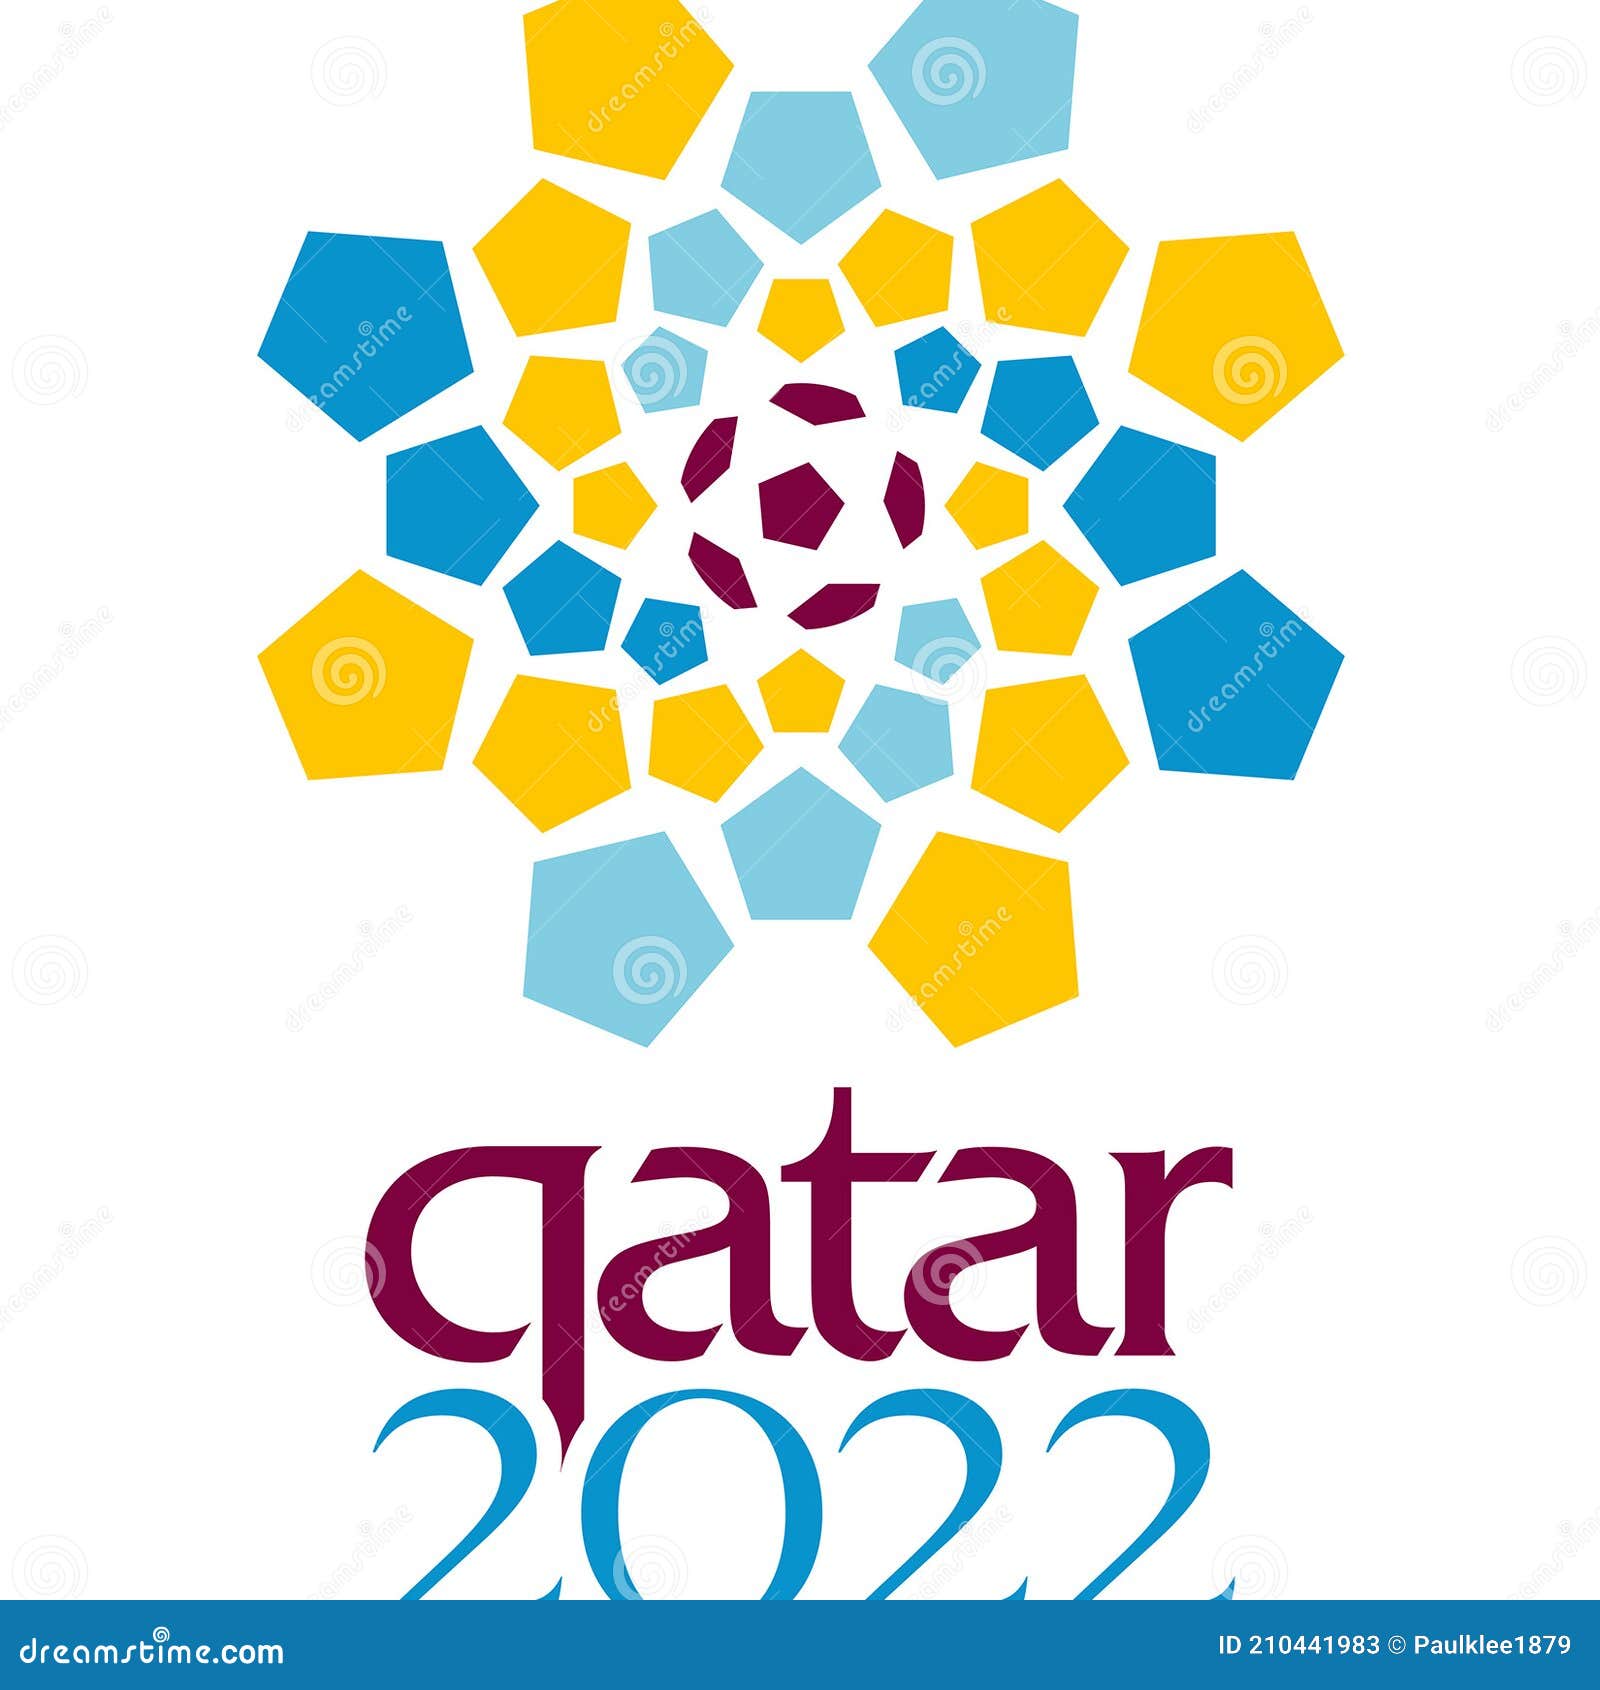 Biểu tượng World Cup 2022 Qatar: Tham gia khám phá biểu tượng World Cup 2022 Qatar, một biểu tượng đặc biệt được tạo ra để tôn vinh sự kiện thể thao lớn nhất hành tinh này.